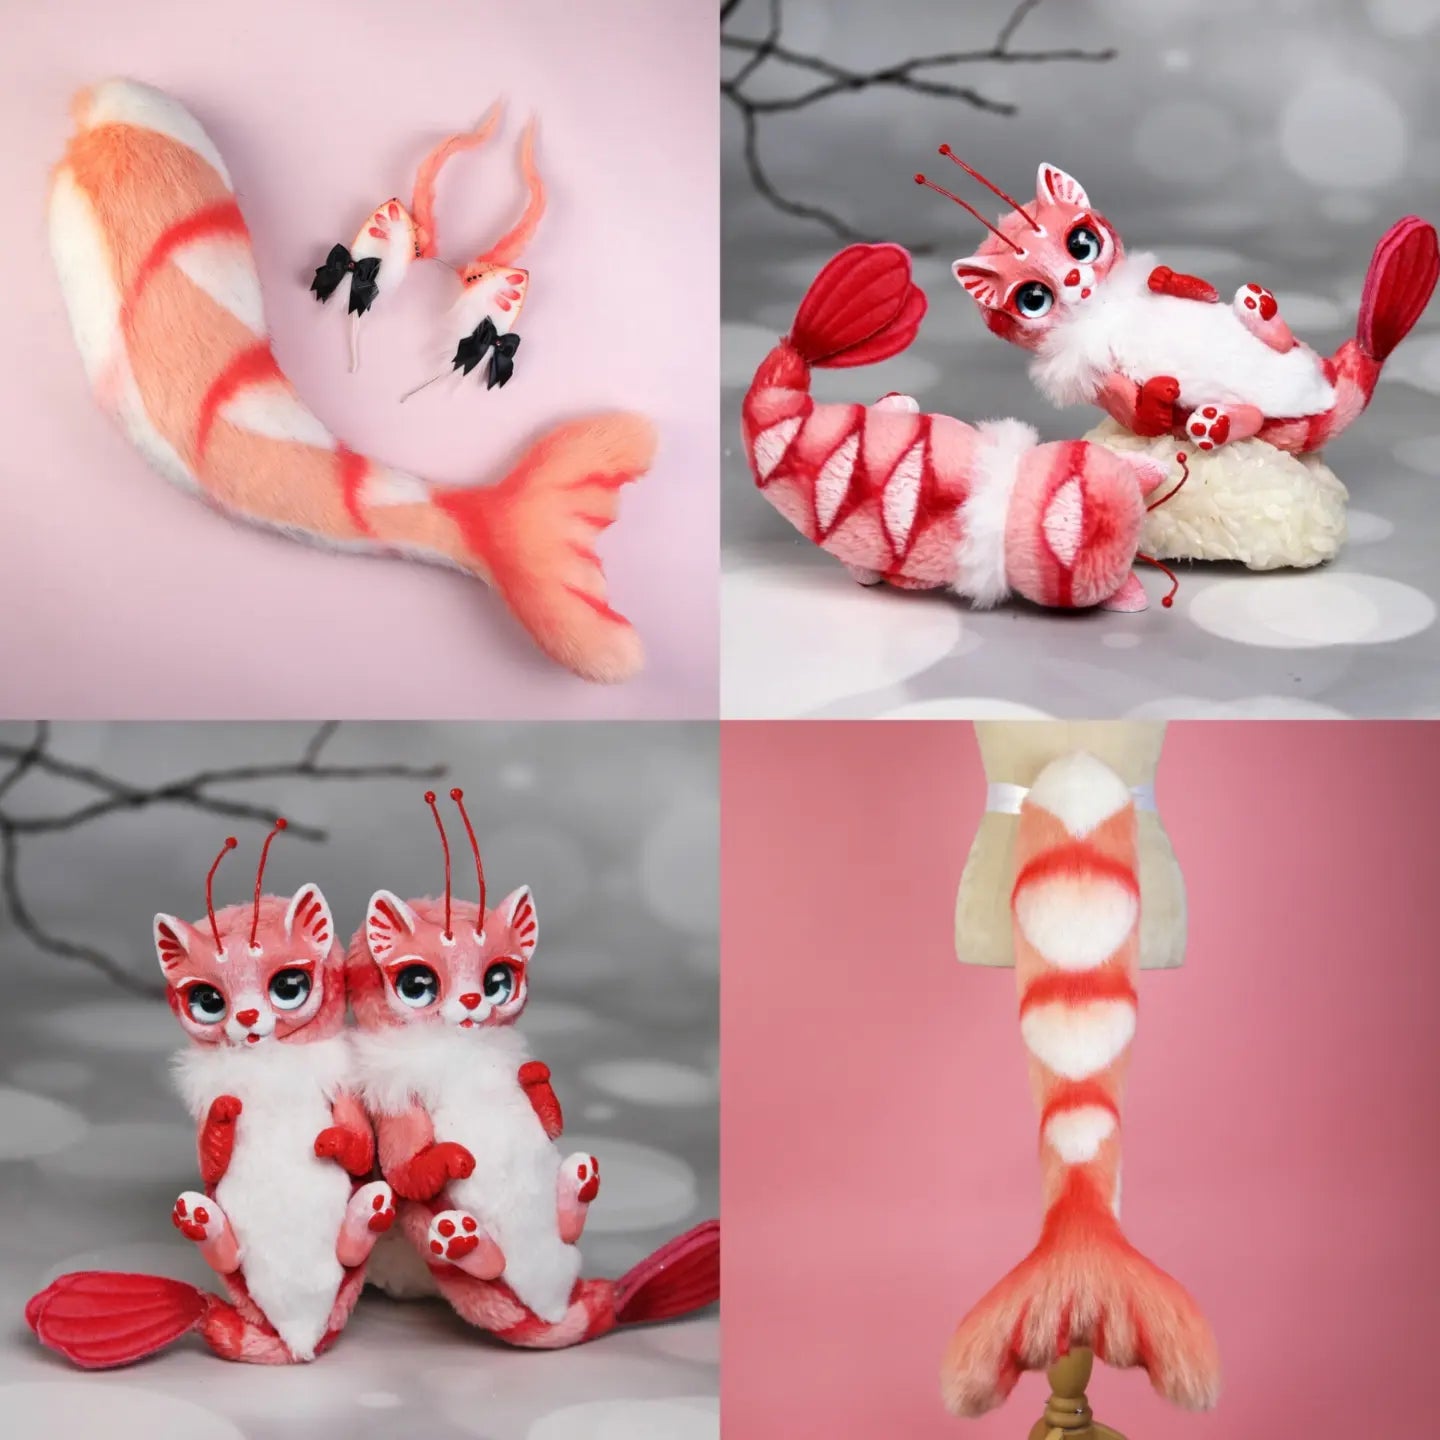 Shrimp Kitten Ears and Tail + Toy Shrimp Kitten Set